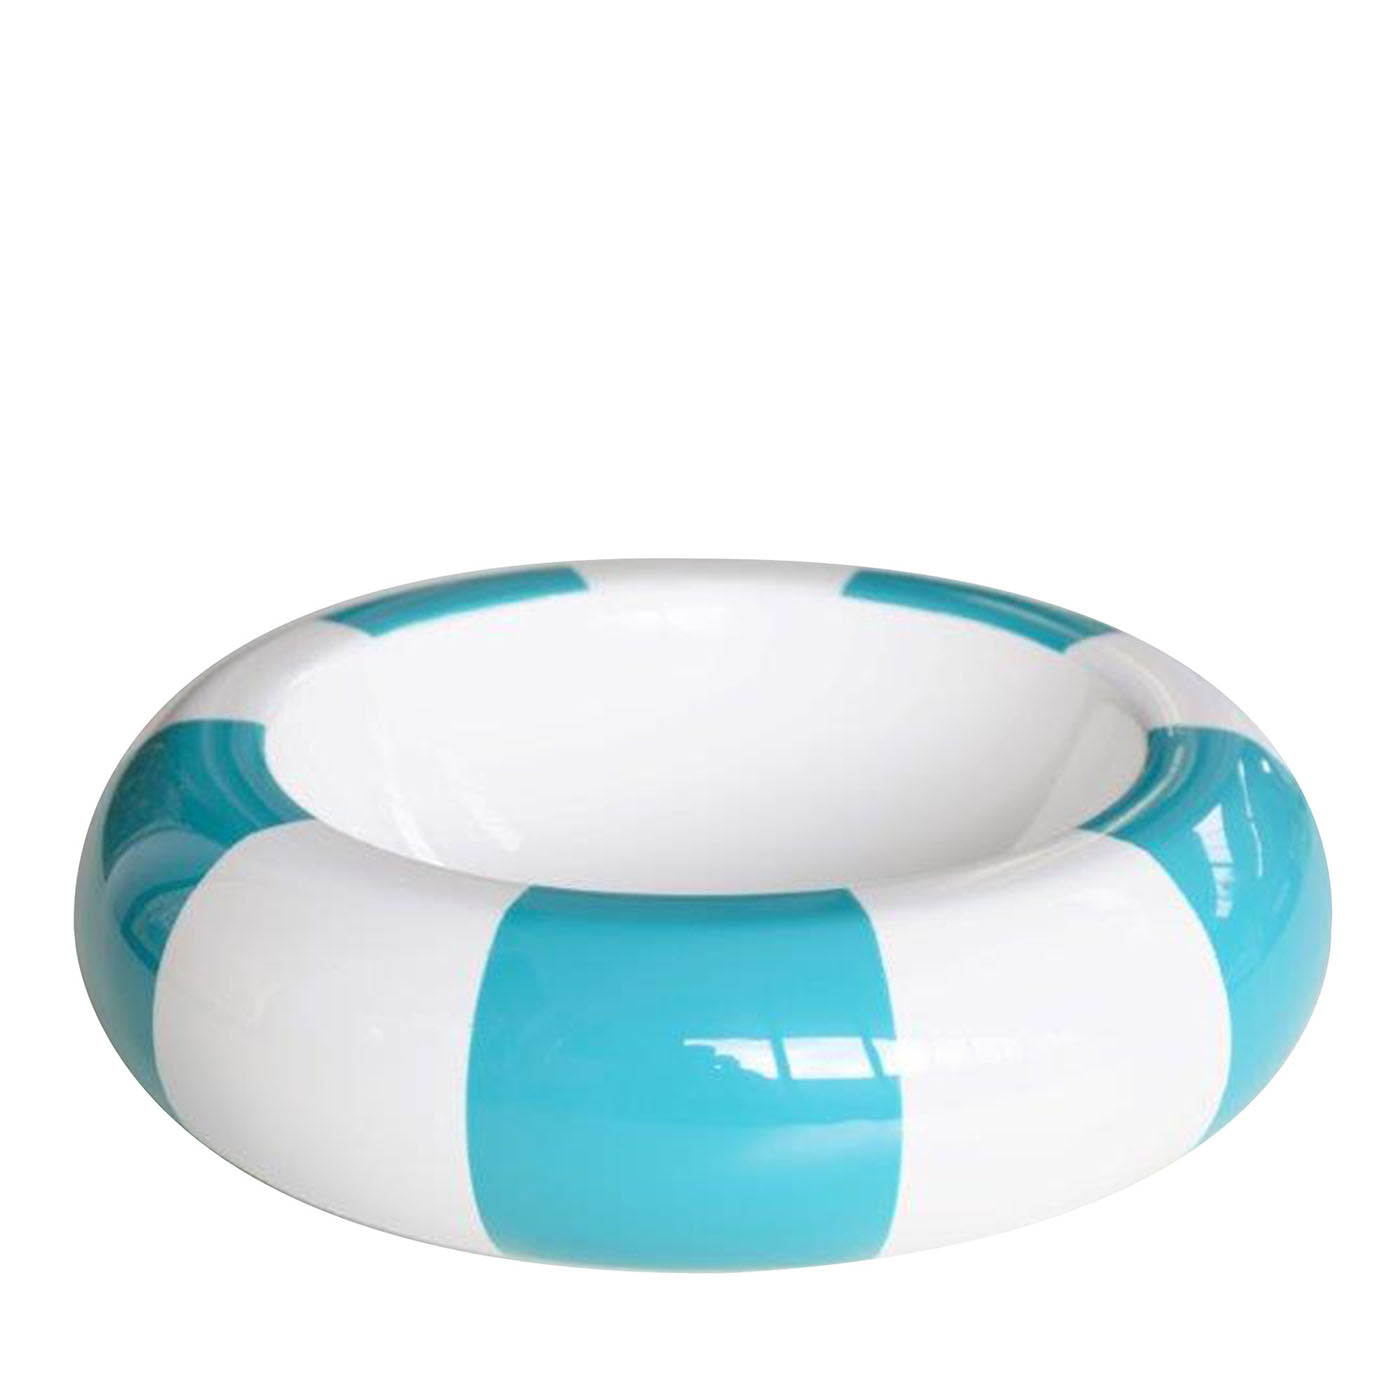 Stripes Round Turquoise & White Bowl - Main view